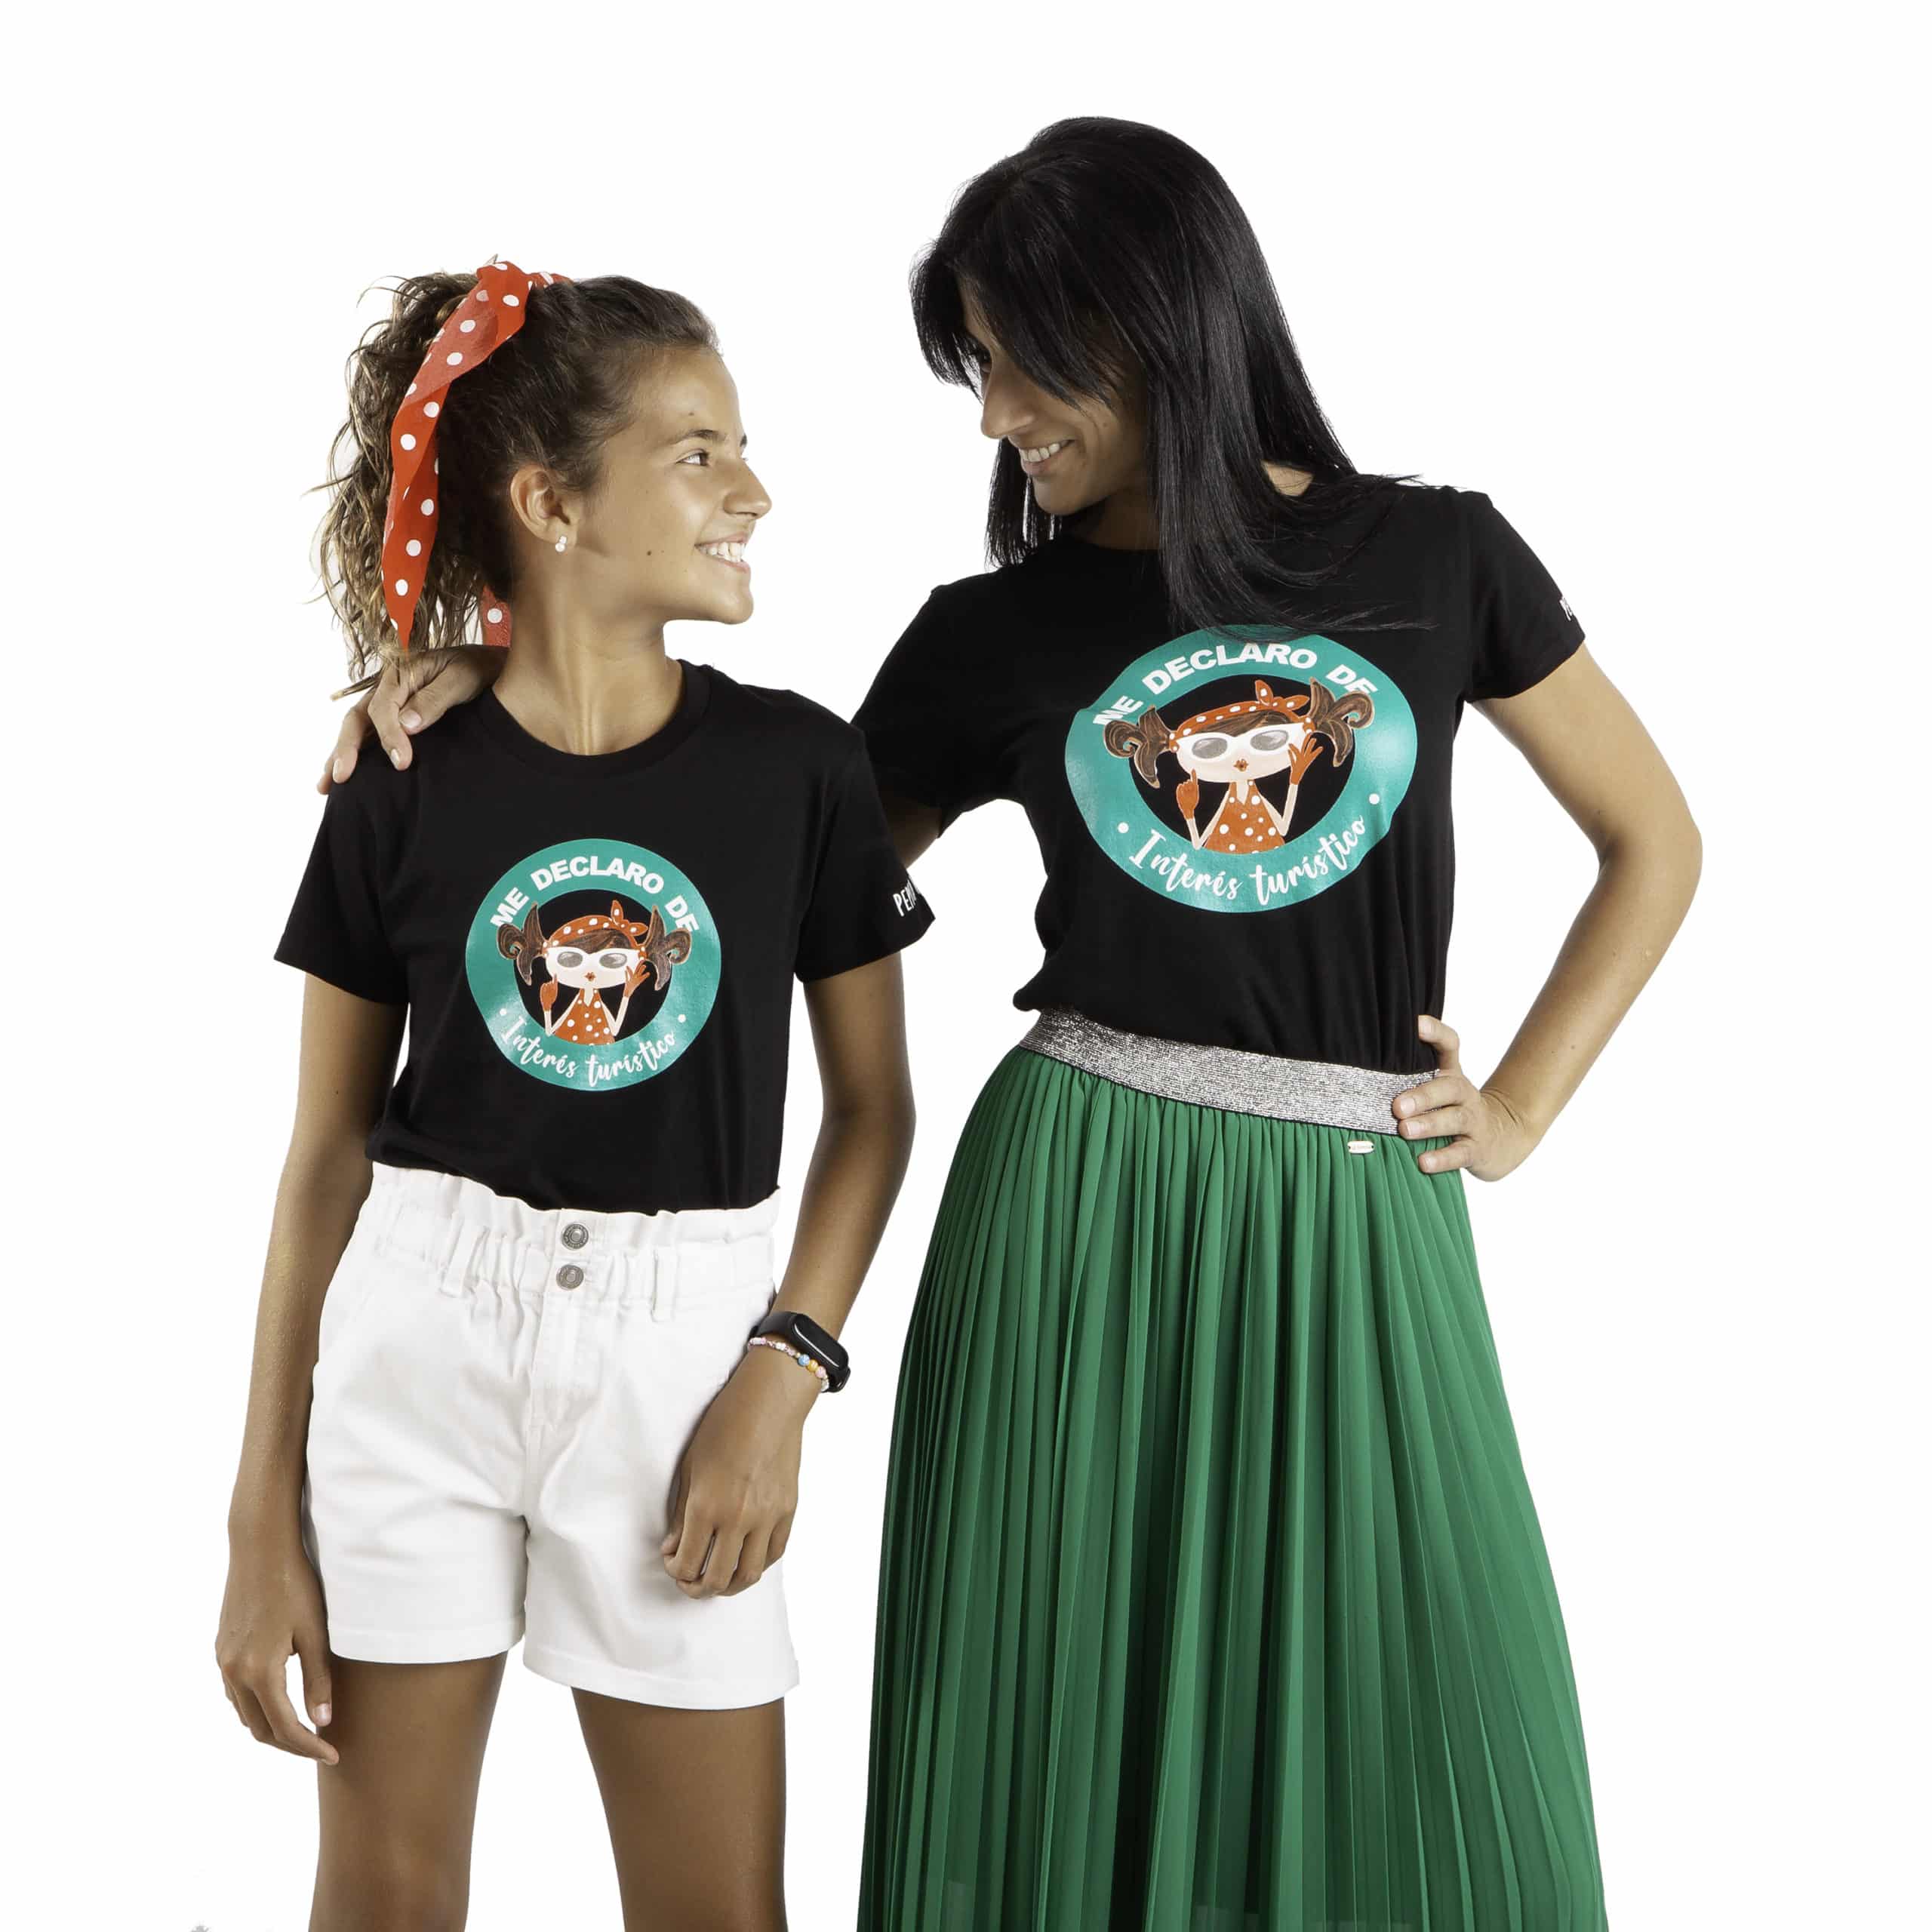 Camiseta de algodón orgánico de la marca Pepita Viajera en color negro para aquellas que se declaran de Interés Turístico. Vista puesta en modelos chica adulta y niña